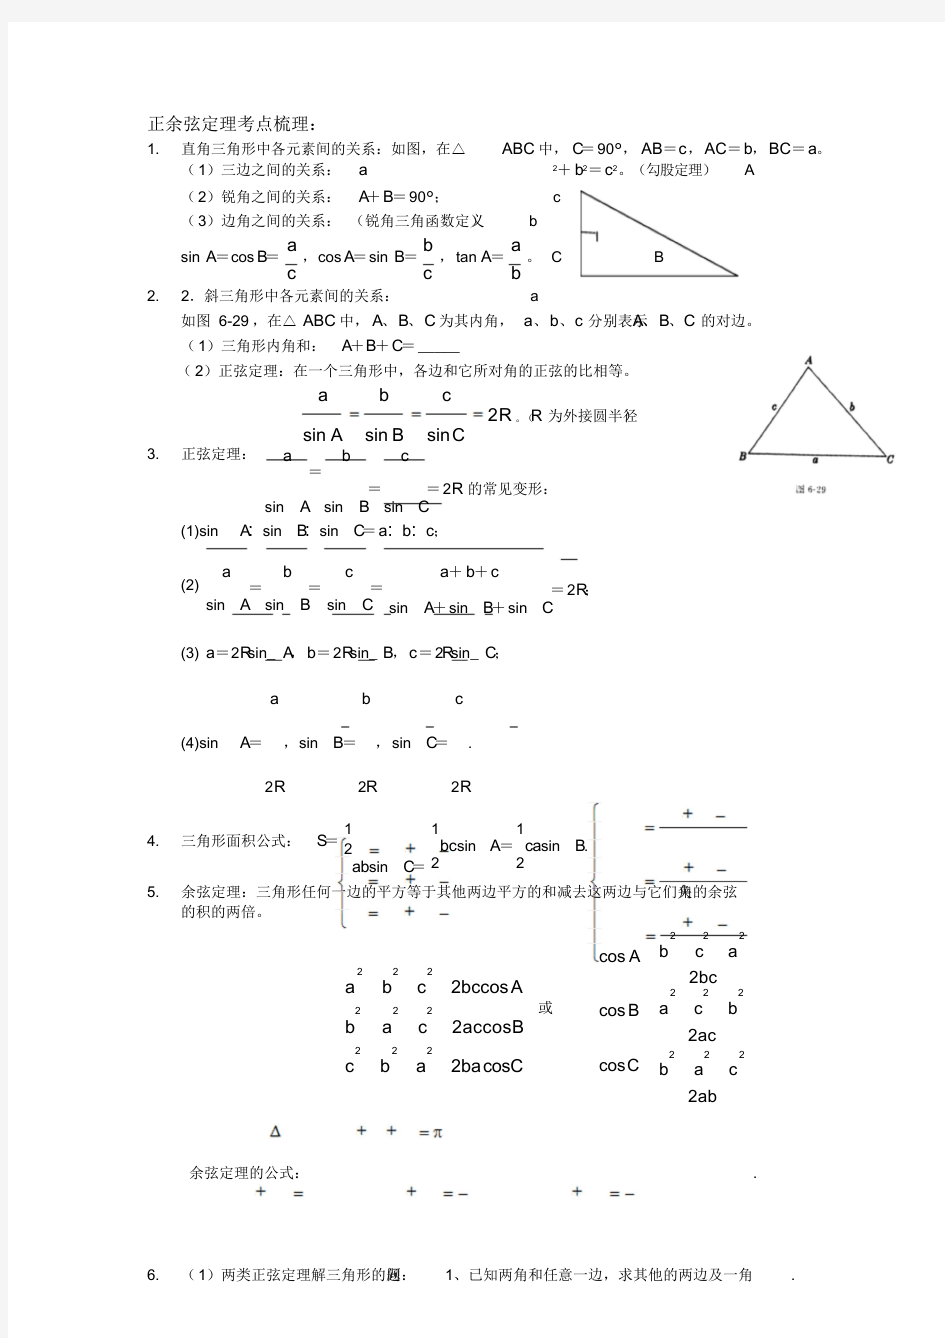 正余弦定理与解三角形整理(有答案)